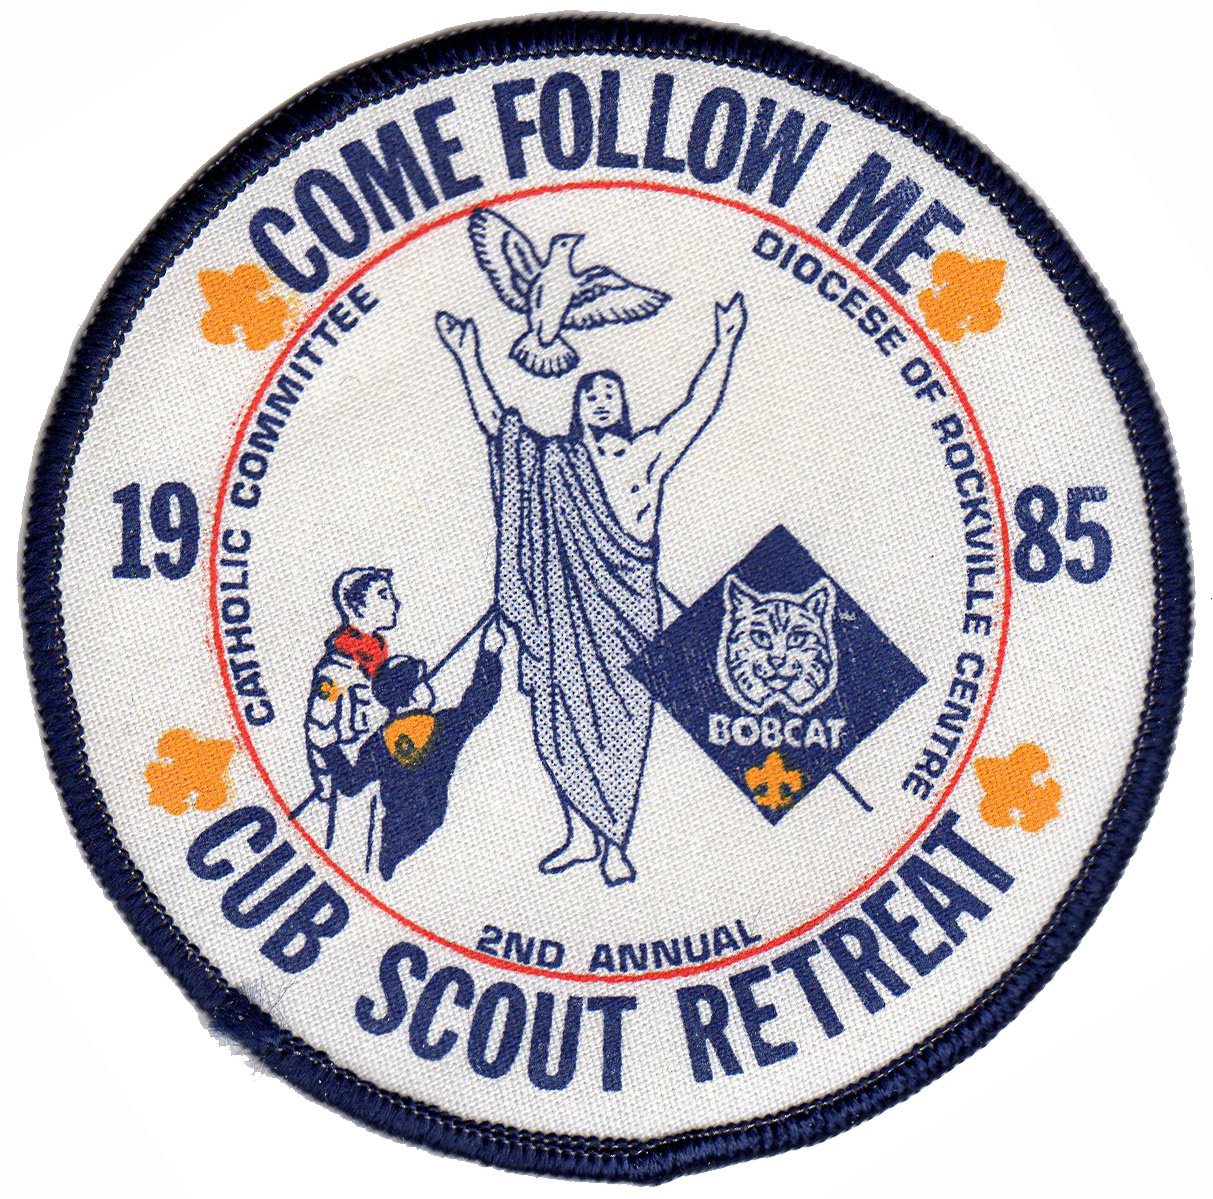 1985 Cub Scout Retreat